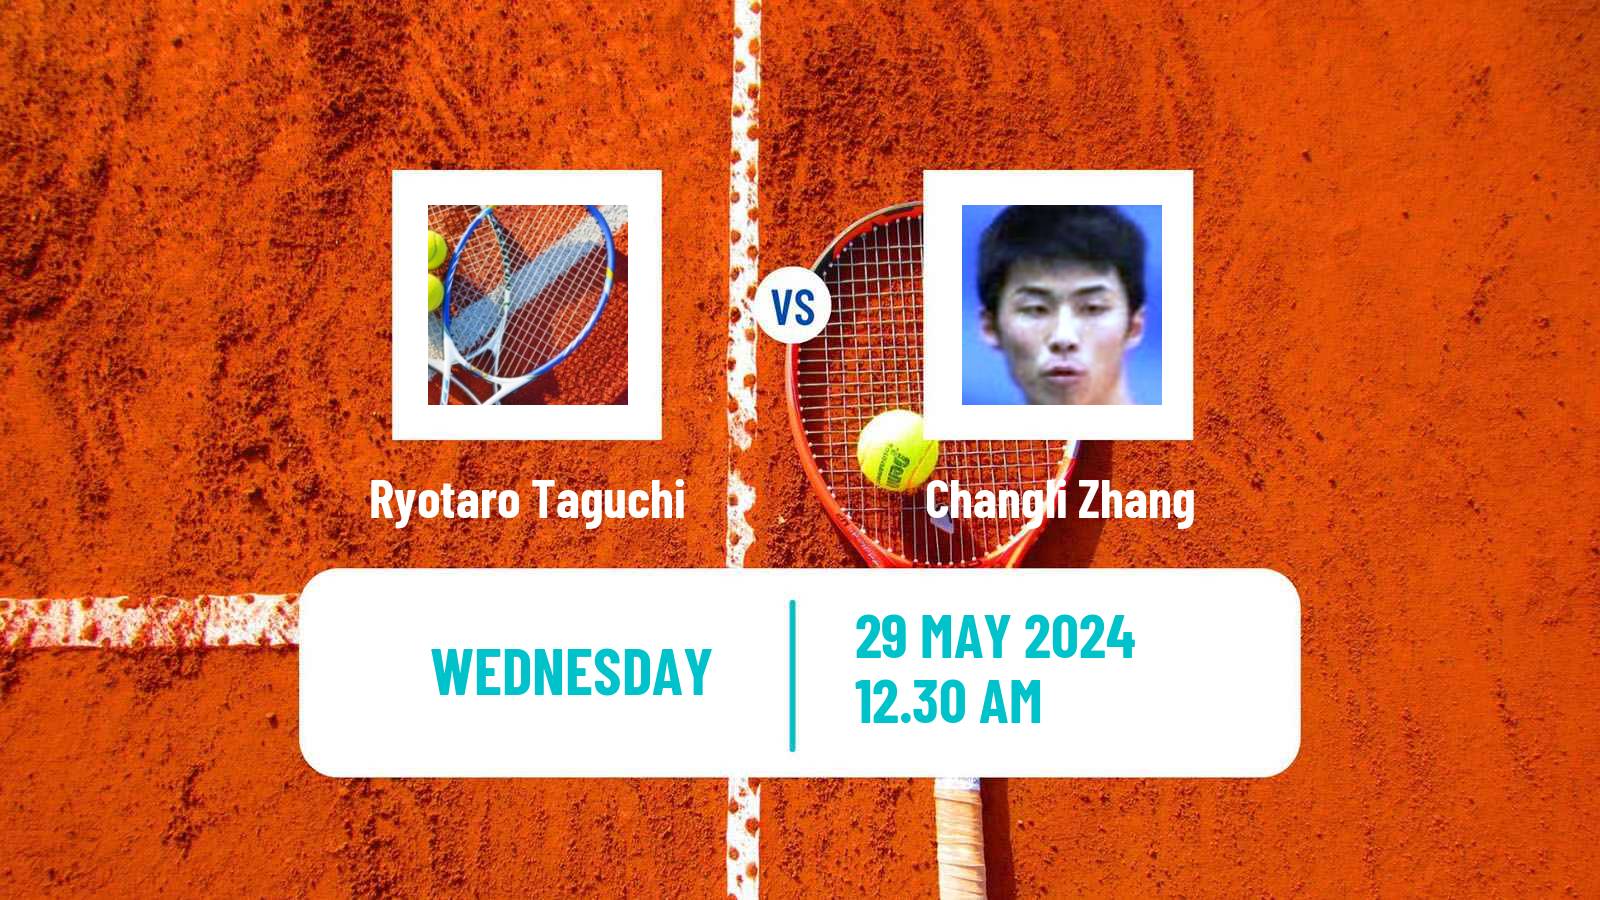 Tennis ITF M25 Baotou Men Ryotaro Taguchi - Changli Zhang